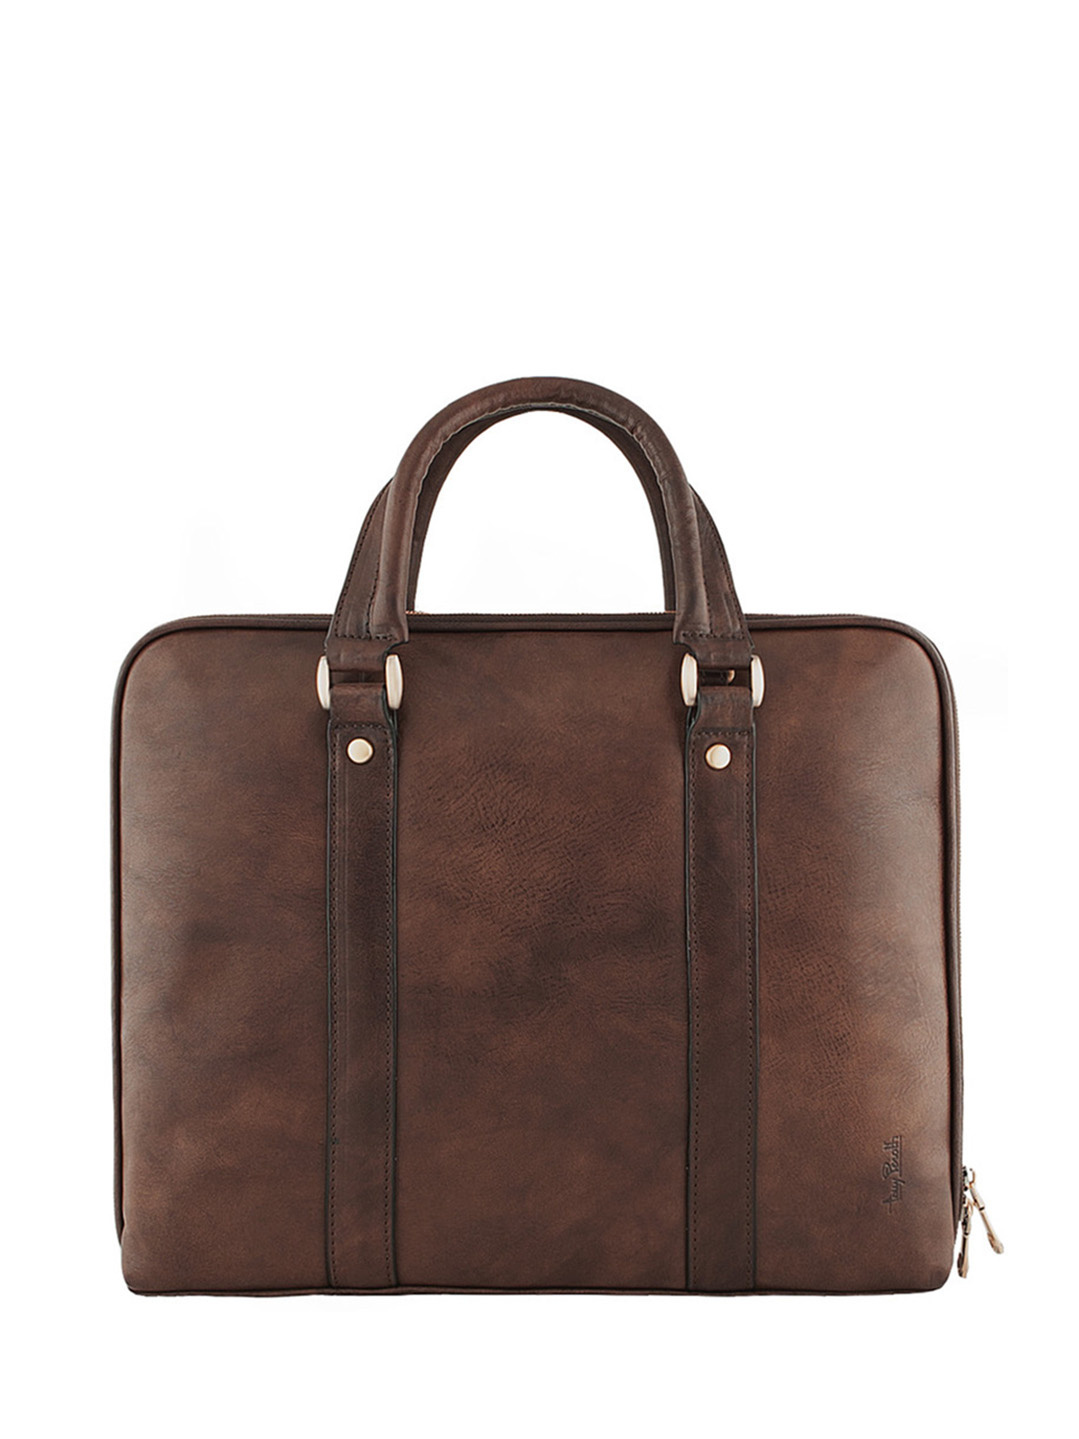 Фото Компактная кожаная сумка формата А4 коричневого цвета Деловые сумки (А4)